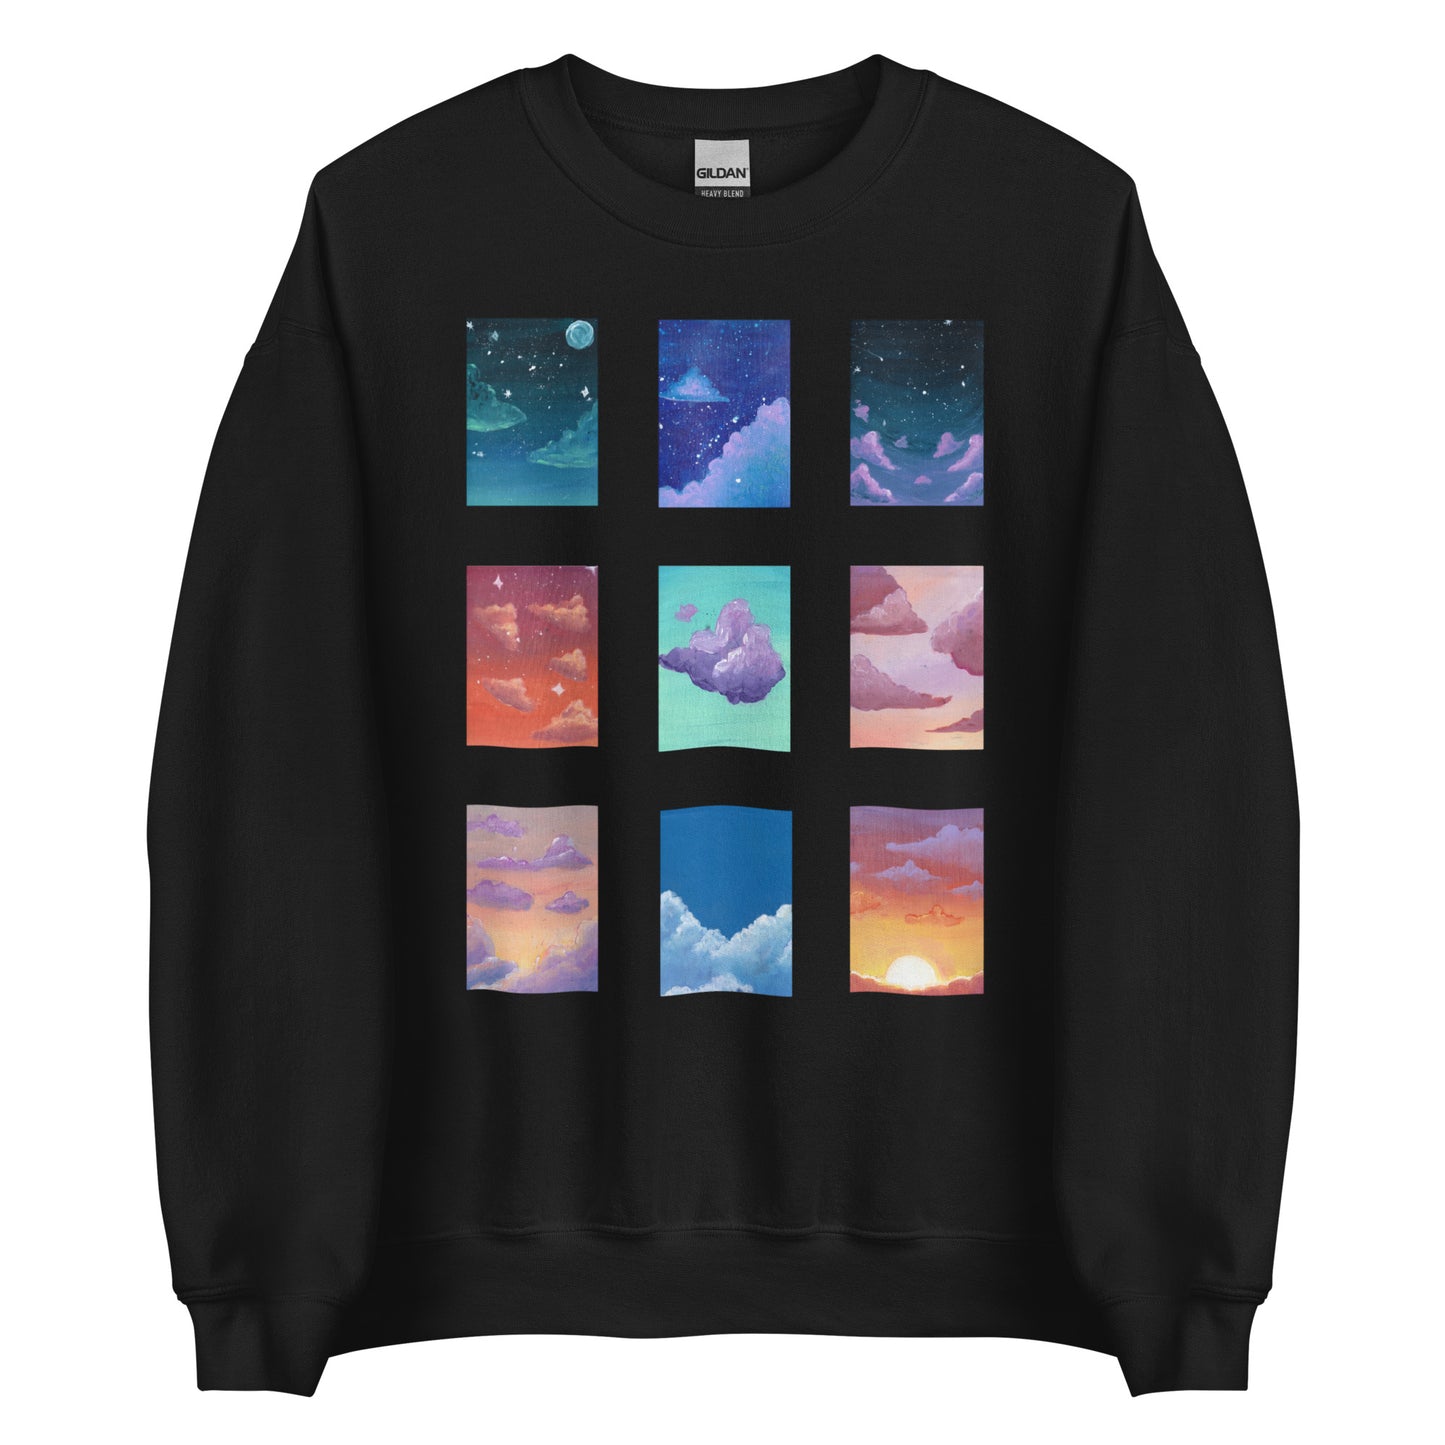 Dreamscapes sweatshirt